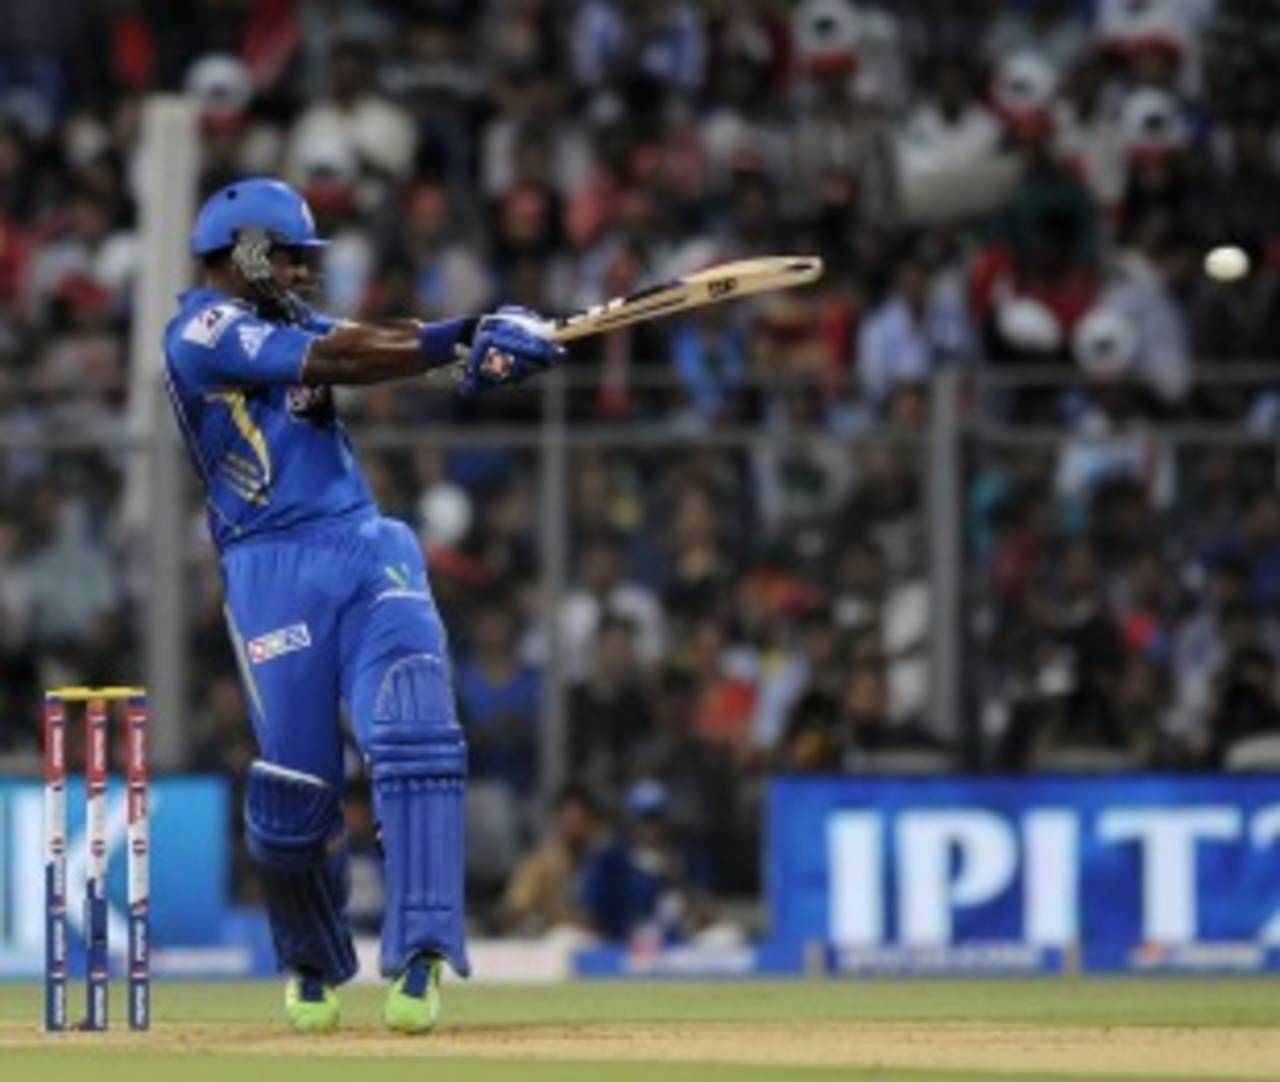 Dwayne Smith made 33 off 32 balls, Mumbai Indians v Kings XI Punjab, IPL 2013, Mumbai, April 29, 2013
